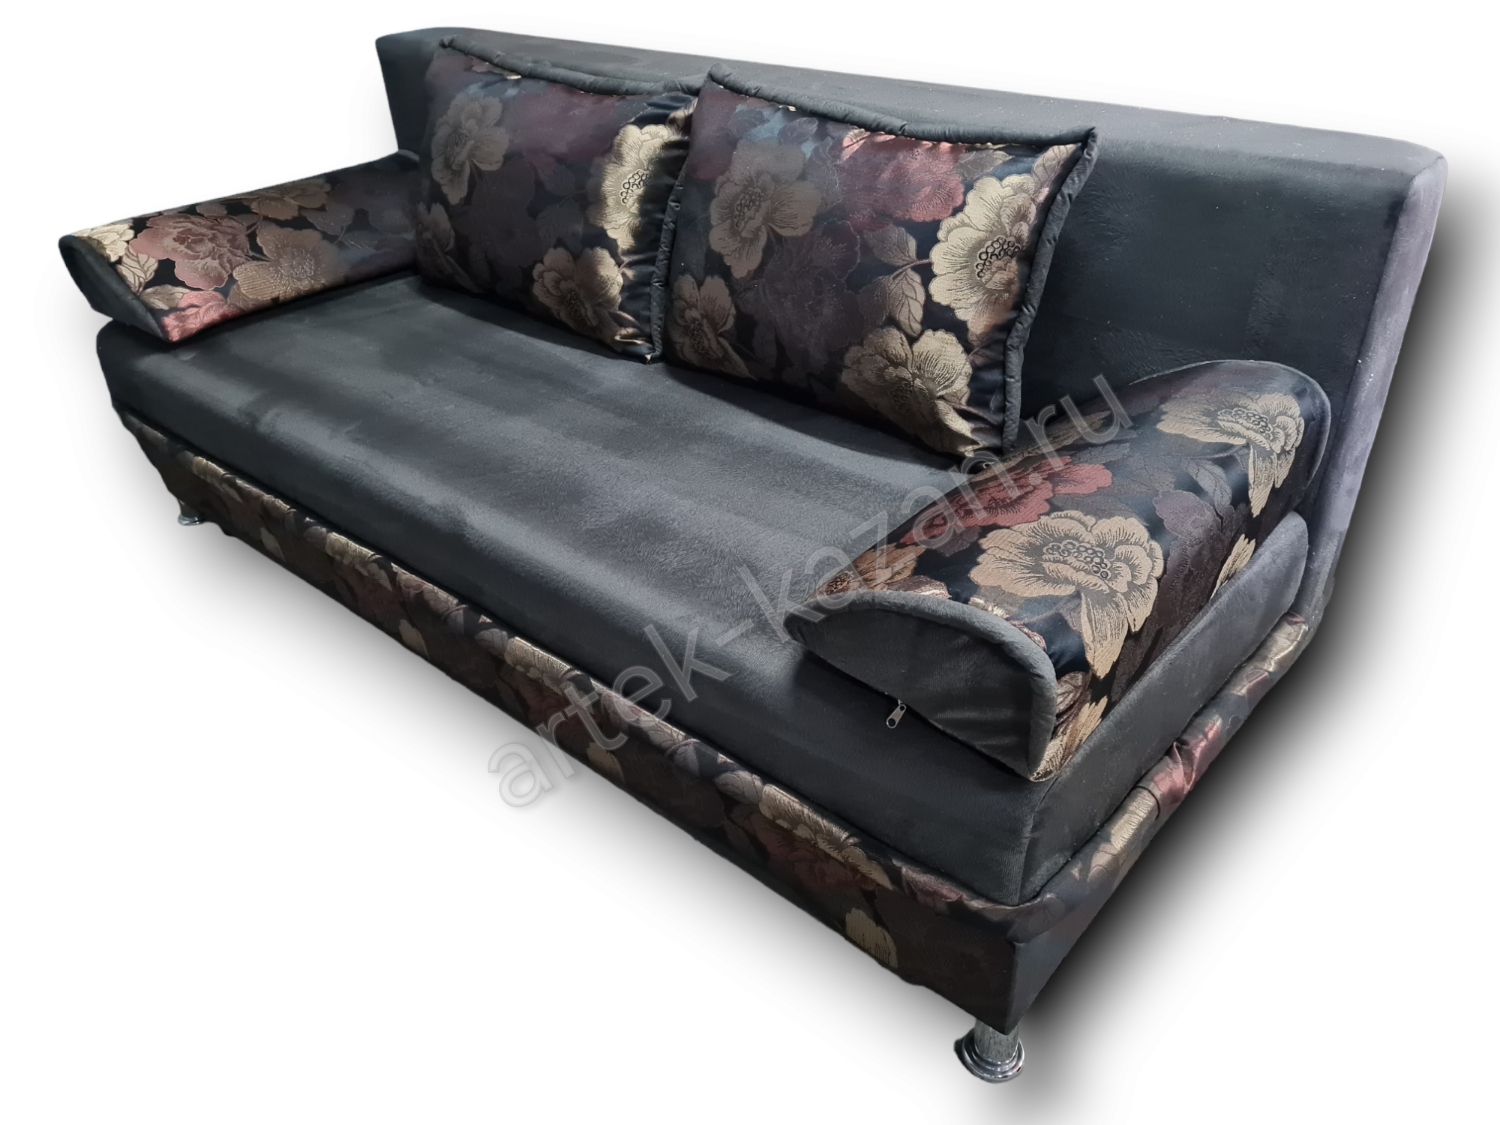 диван еврокнижка Эконом фото № 116. Купить недорогой диван по низкой цене от производителя можно у нас.